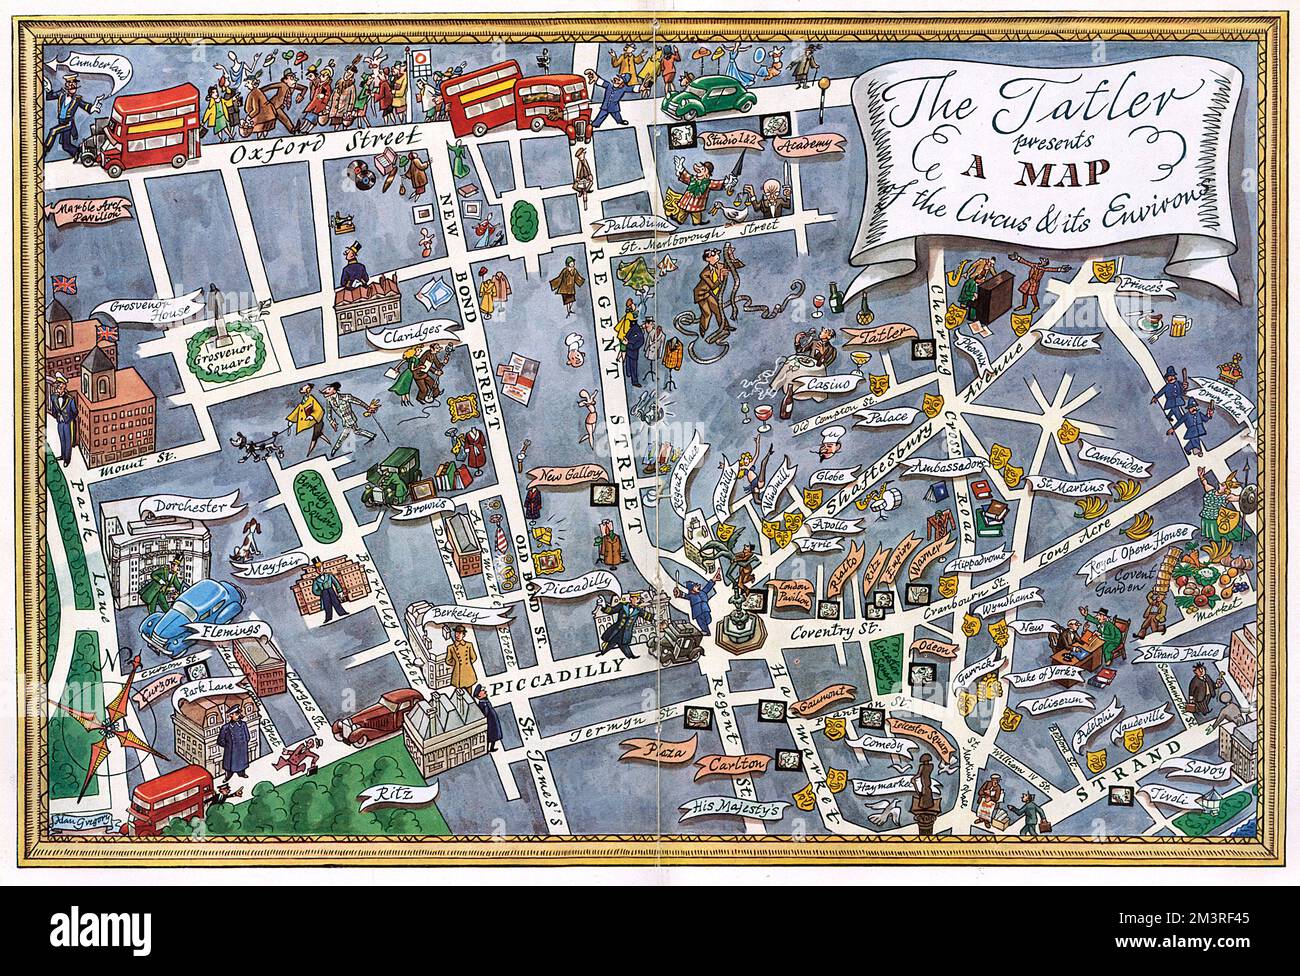 Eine Karte des West End von London mit Piccadilly Circus im Zentrum. Berühmte Theater, Nachtlokale, Kinos und Hotels sind mit dekorativen Etiketten und symbolischen Zeichnungen gekennzeichnet. Datum: 1950 Stockfoto